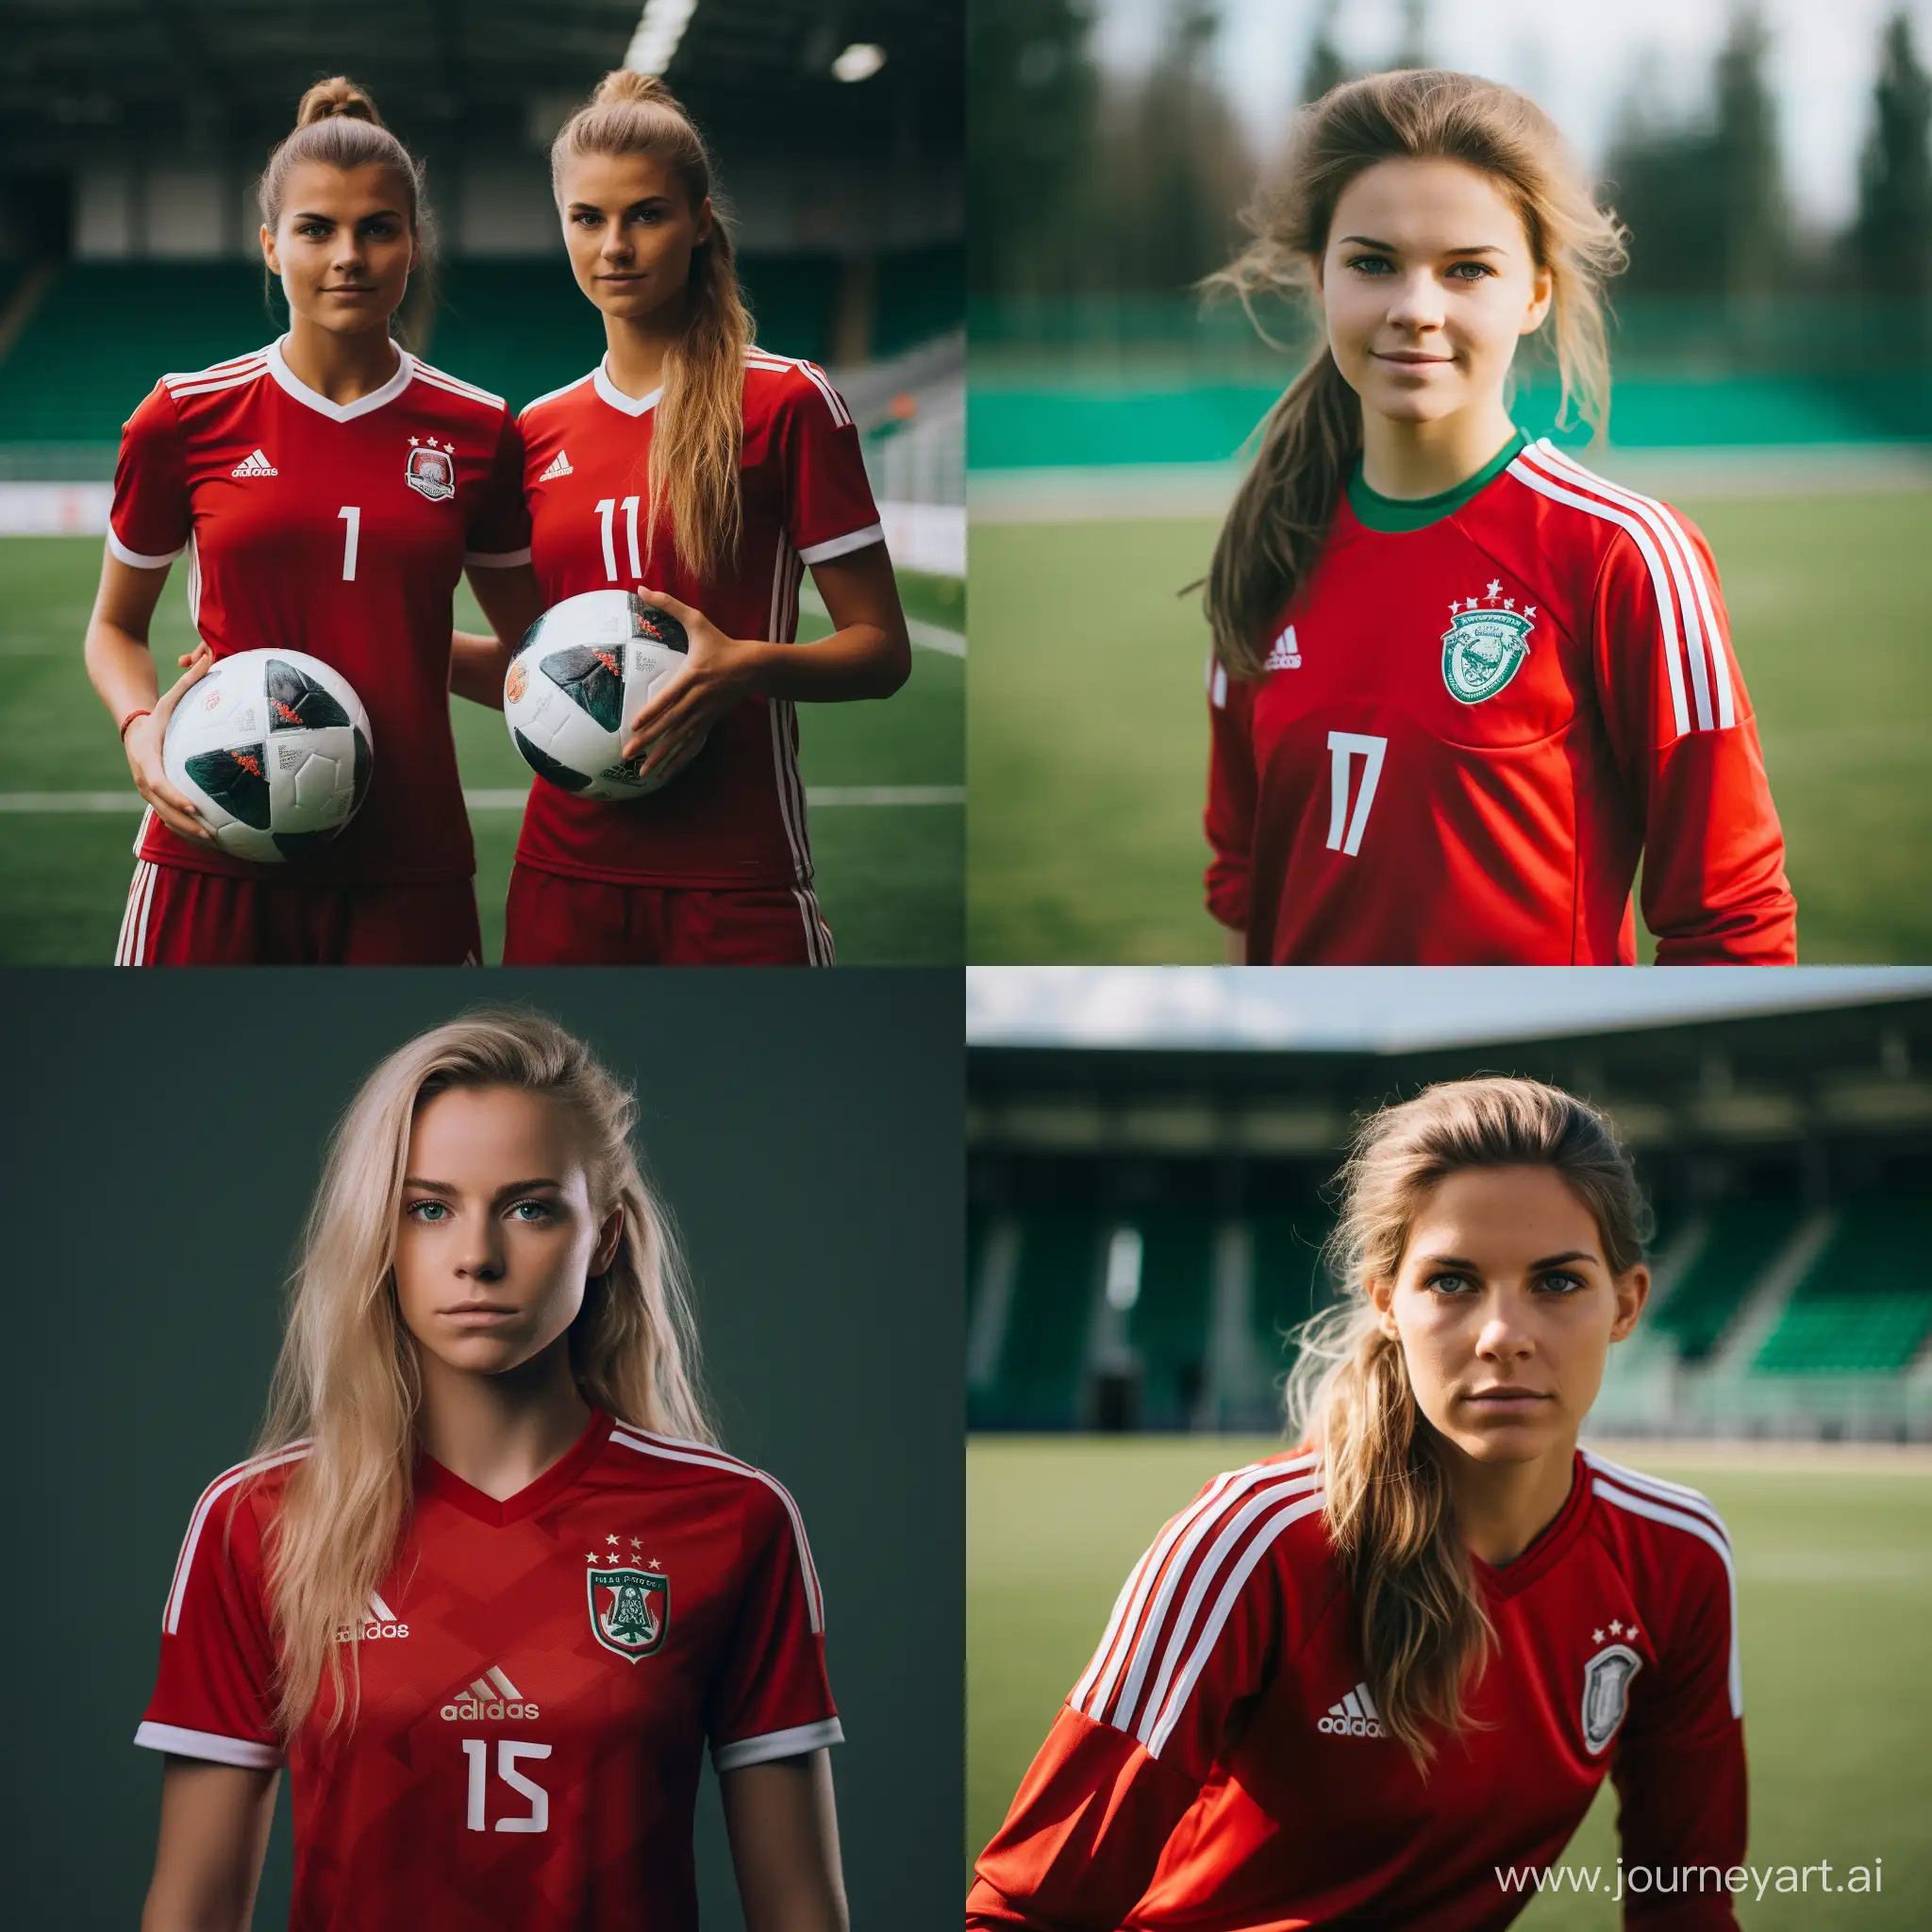 Как выглядят футболистки женского футбольного клуба Локомотив